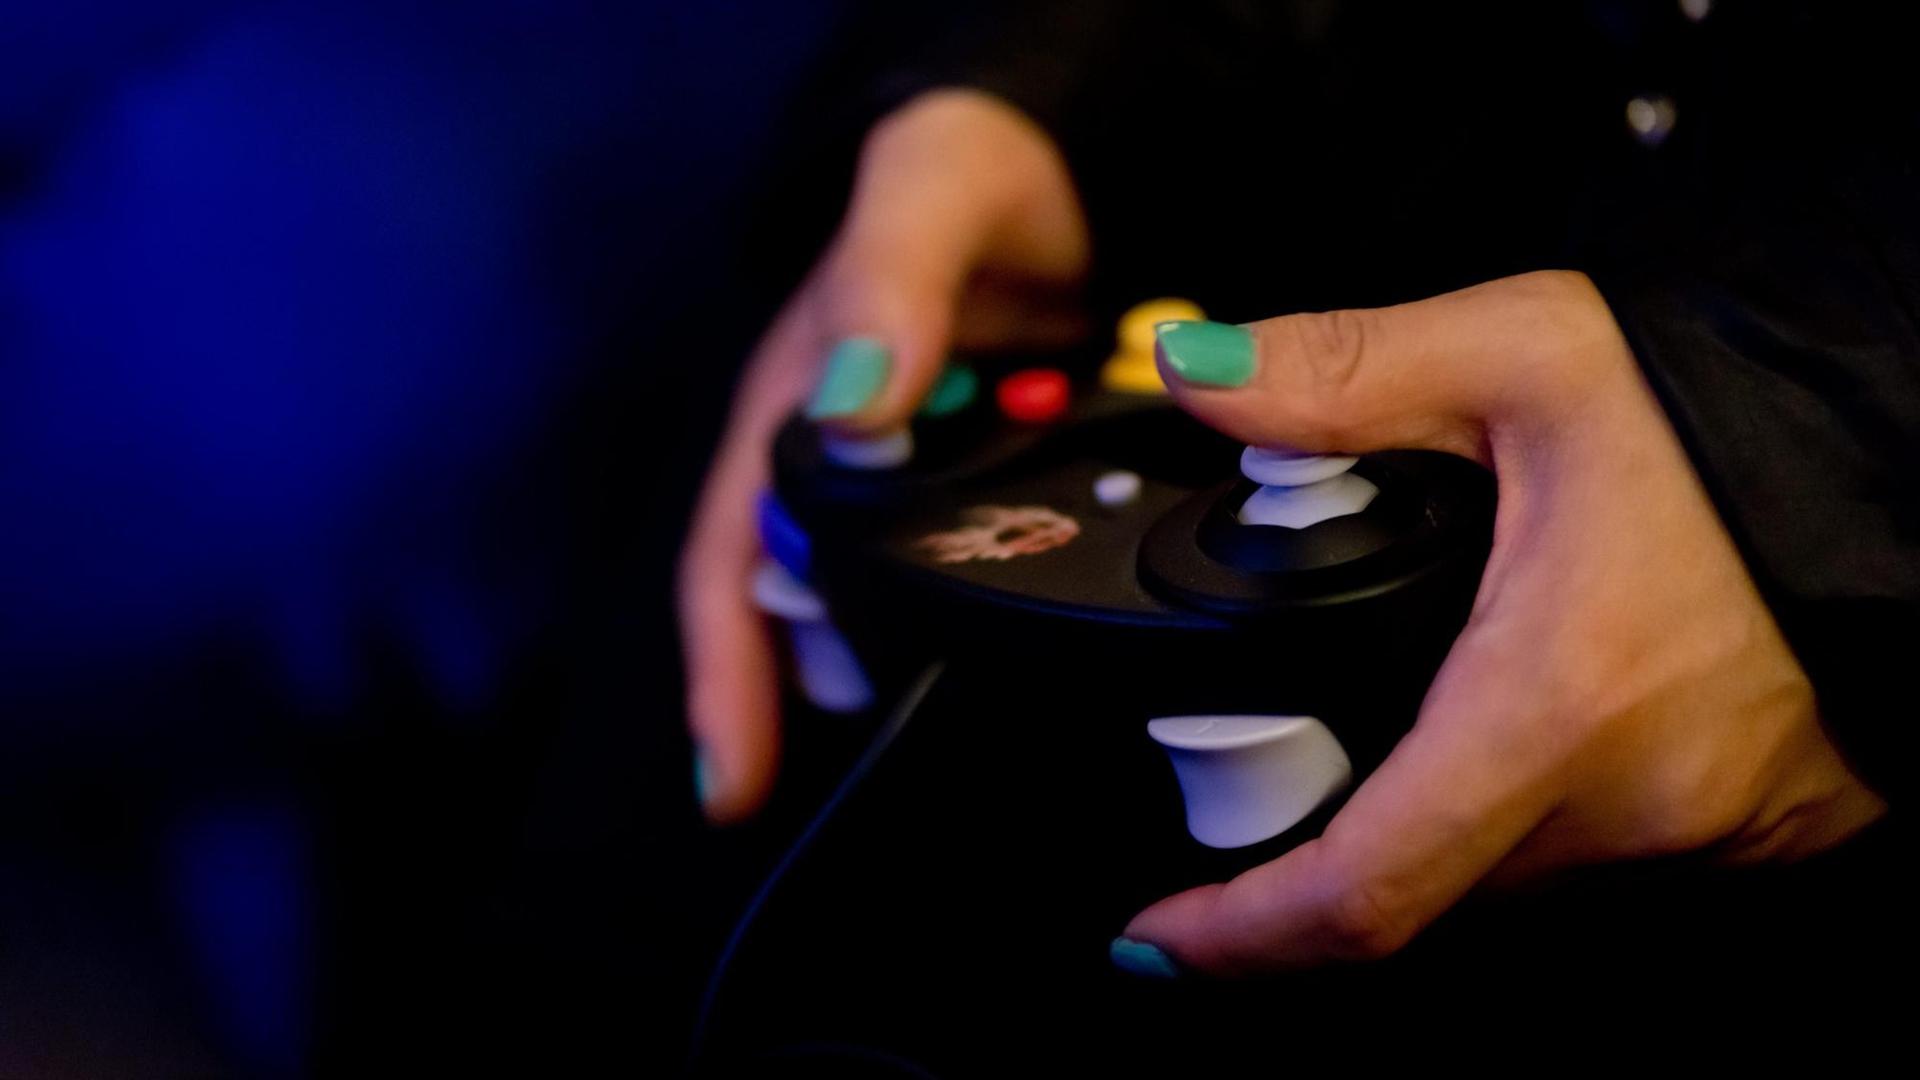 Frauenhände an einem Game Controller